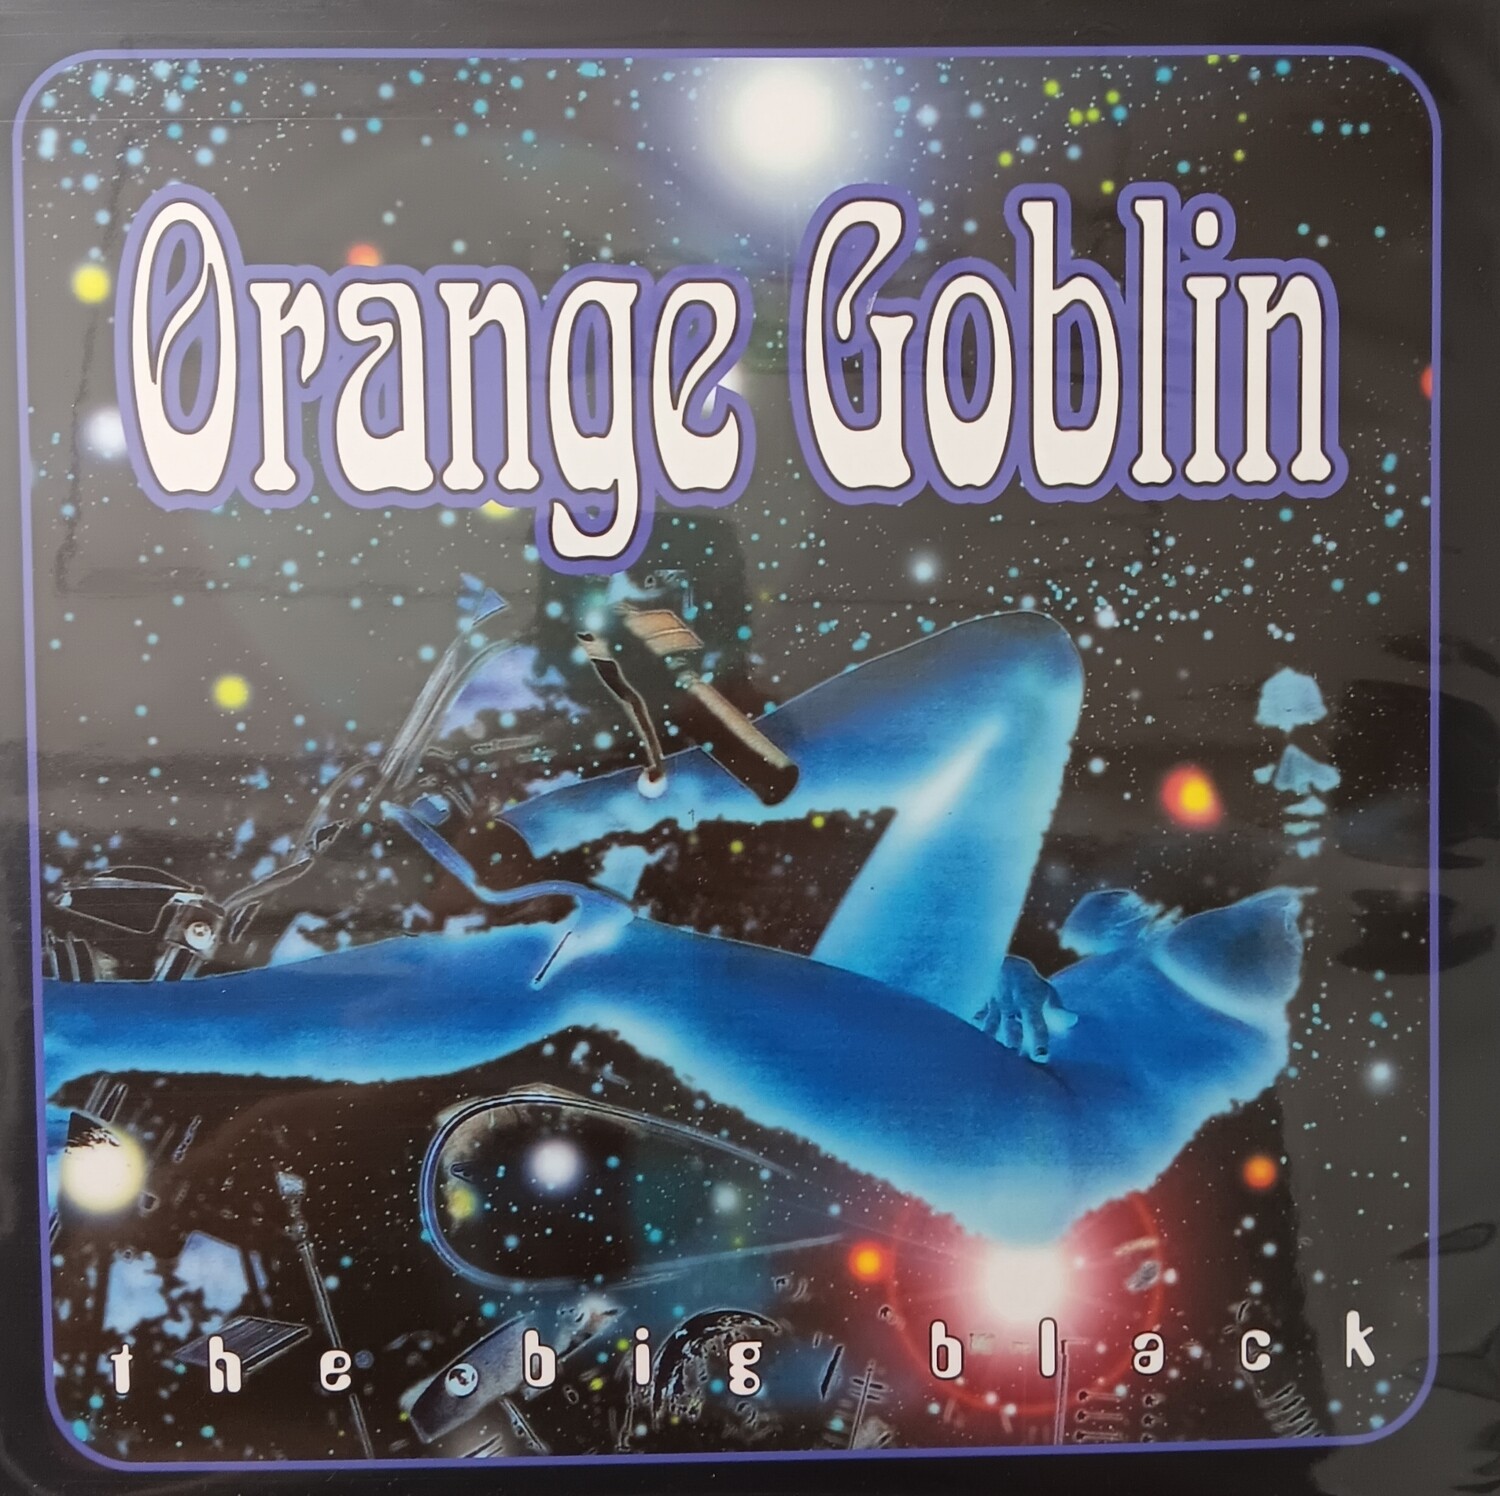 ORANGE GOBLIN - The big black